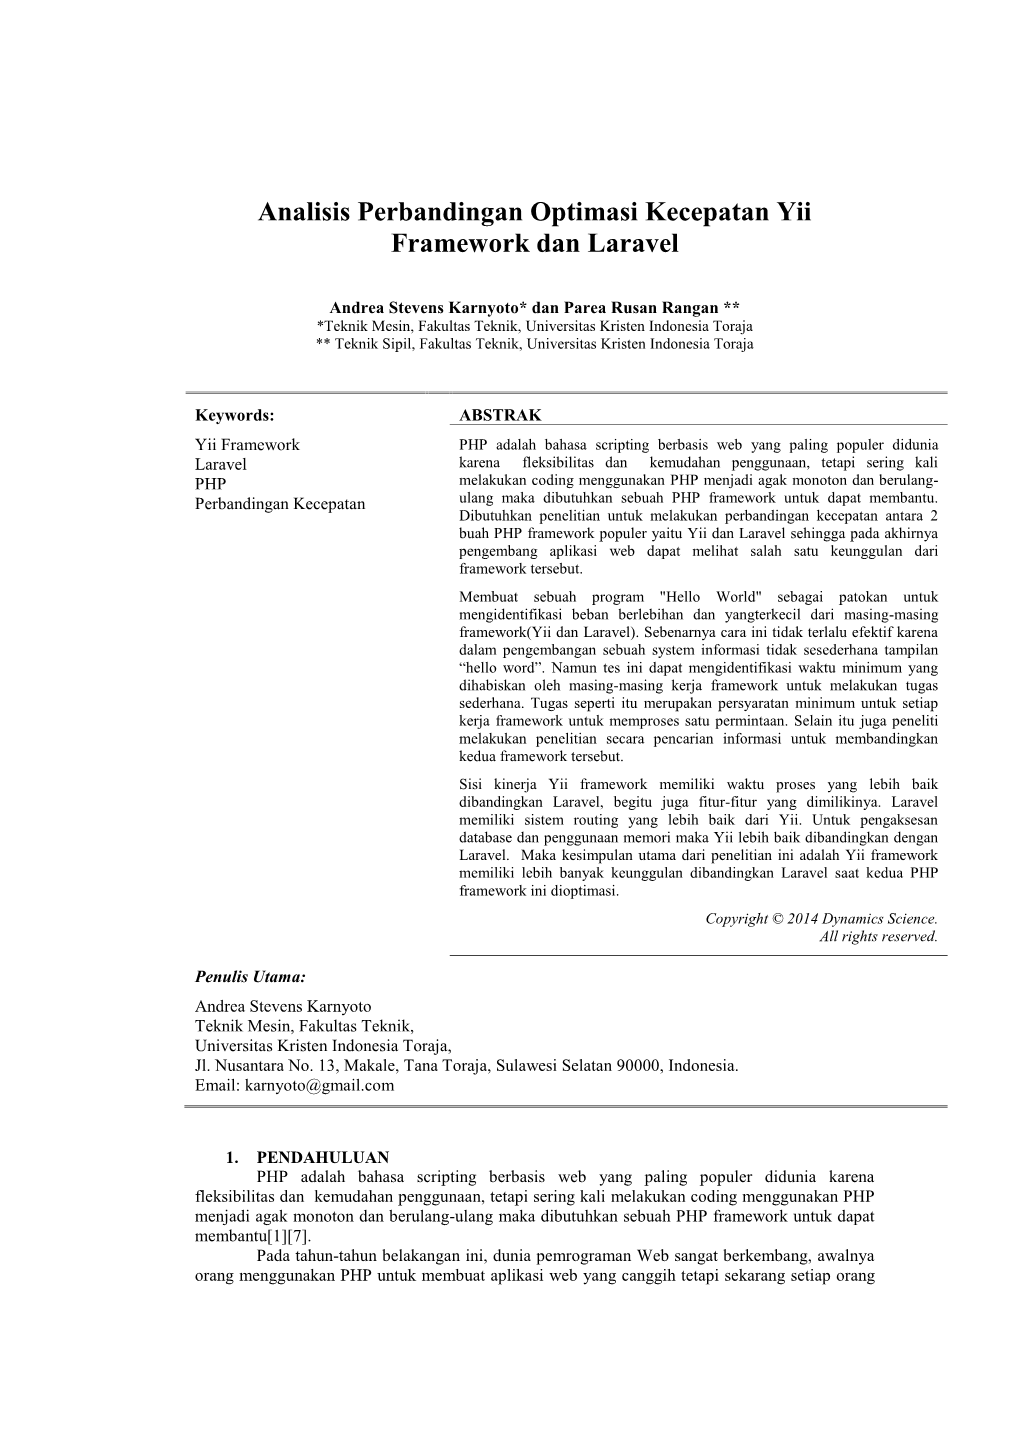 Analisis Perbandingan Optimasi Kecepatan Yii Framework Dan Laravel